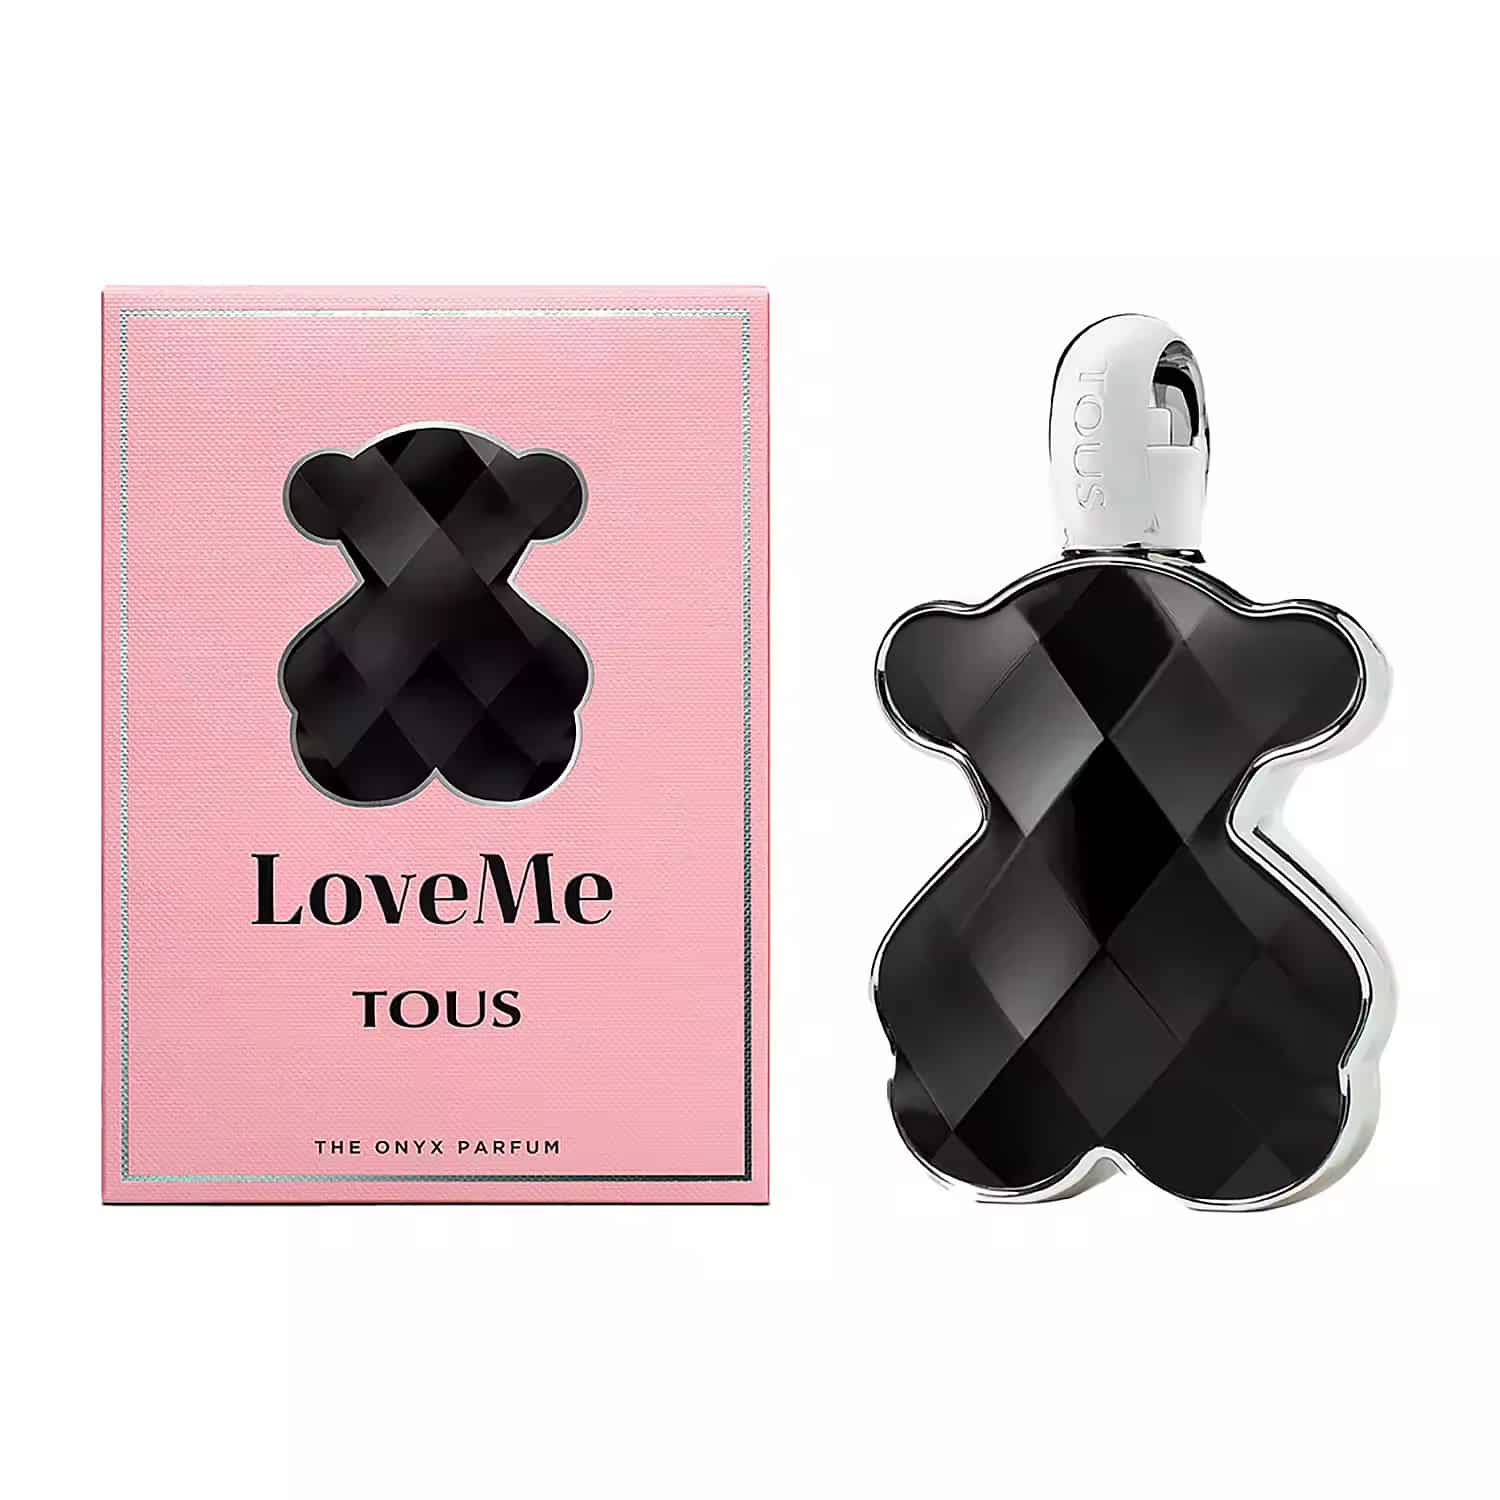 LoveMe The Onyx Parfum by Tous 3.0 oz EDP Spray for Women